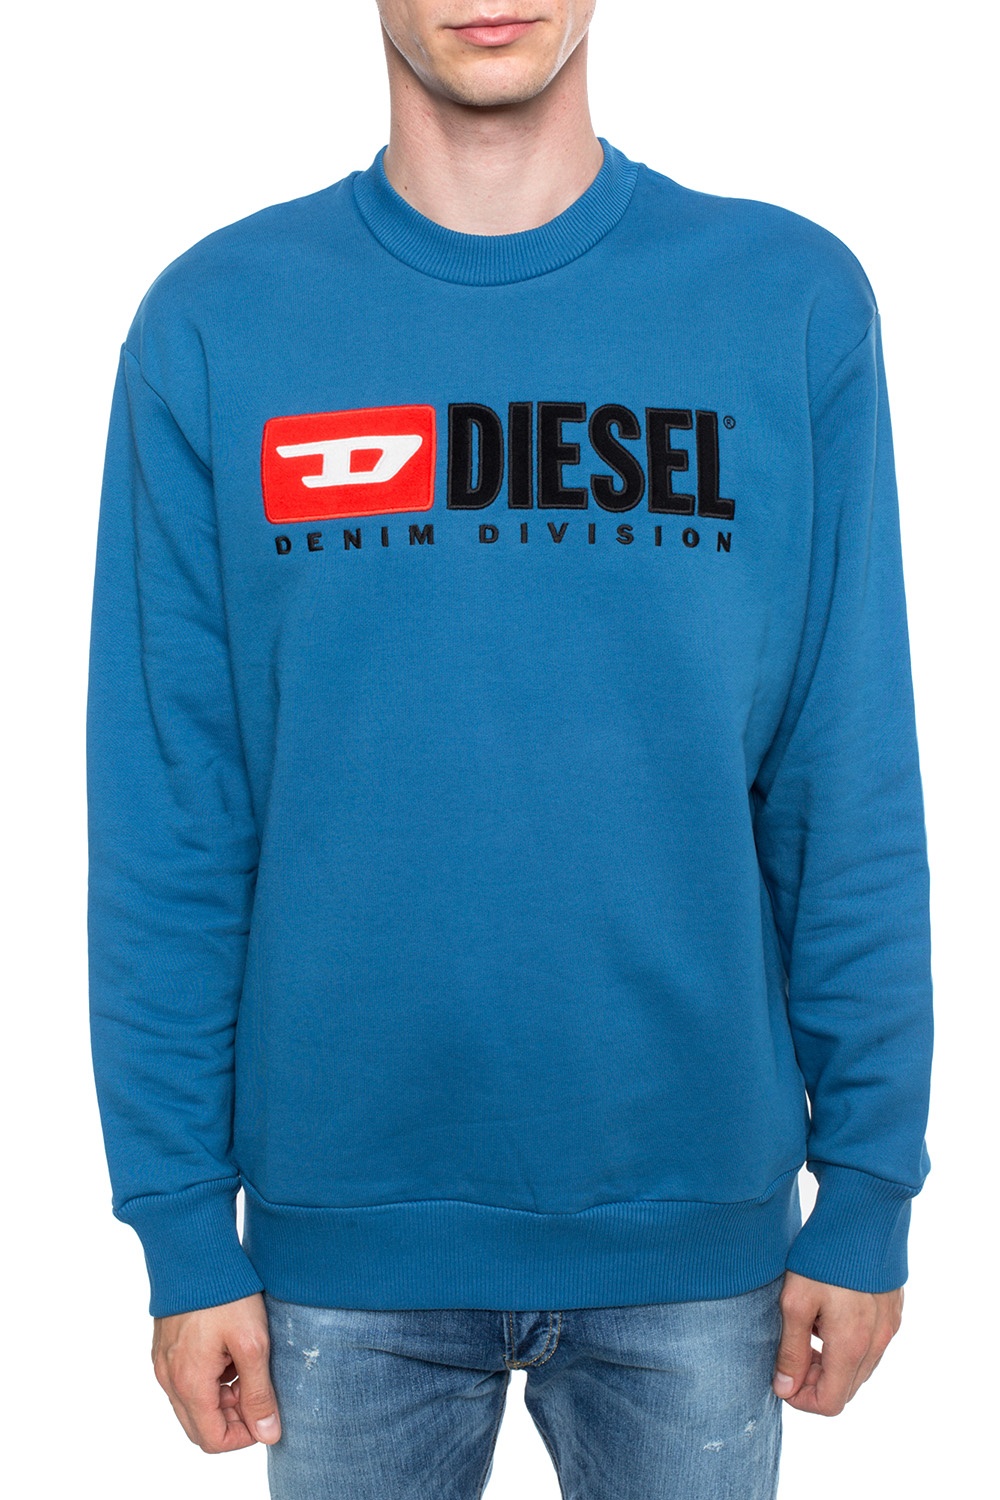 Diesel Jeans Mens S-Crew-Division Felpa Sweatshirt - Navy